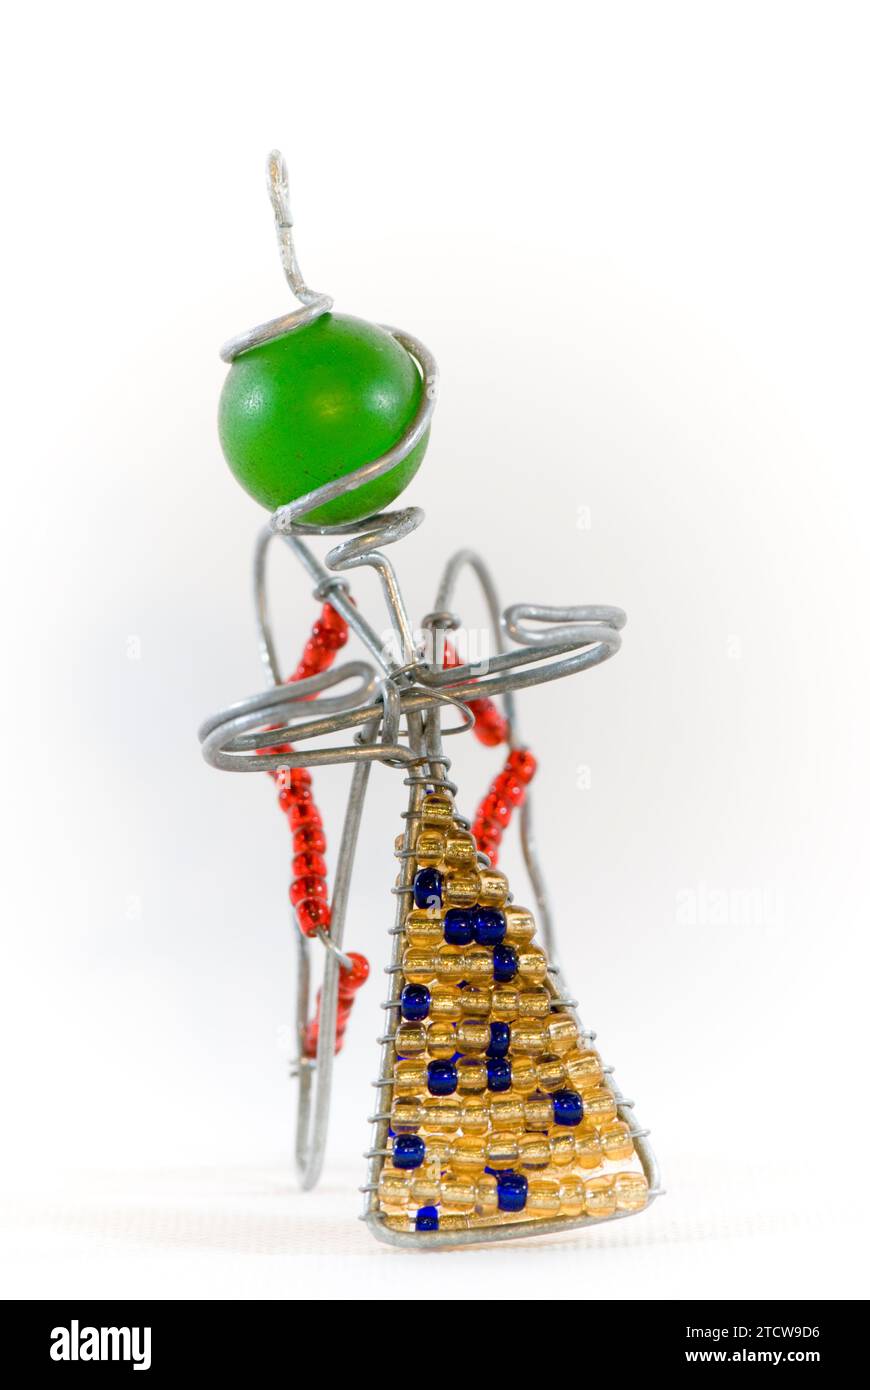 November 2007: Afrikanischer Weihnachtsschmuck: Ein Engel aus Draht und Perlen, der an einem Baum gehängt werden soll. Stockfoto